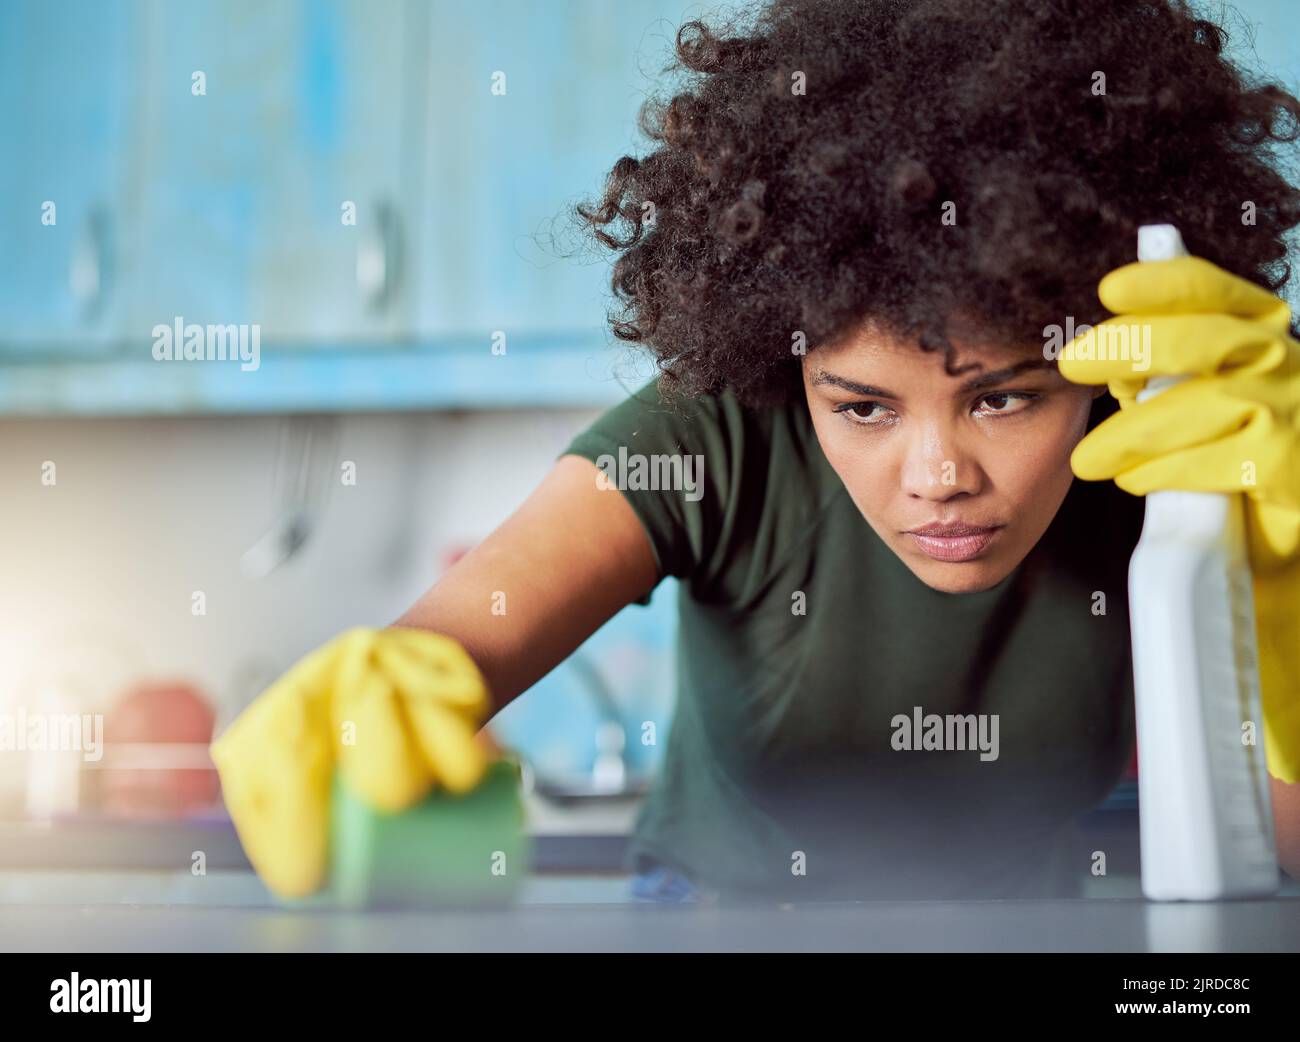 Es braucht Konzentration, um Flecken zu entfernen. Eine attraktive junge Frau mit gelben Handschuhen, die ihr Zuhause putzt. Stockfoto